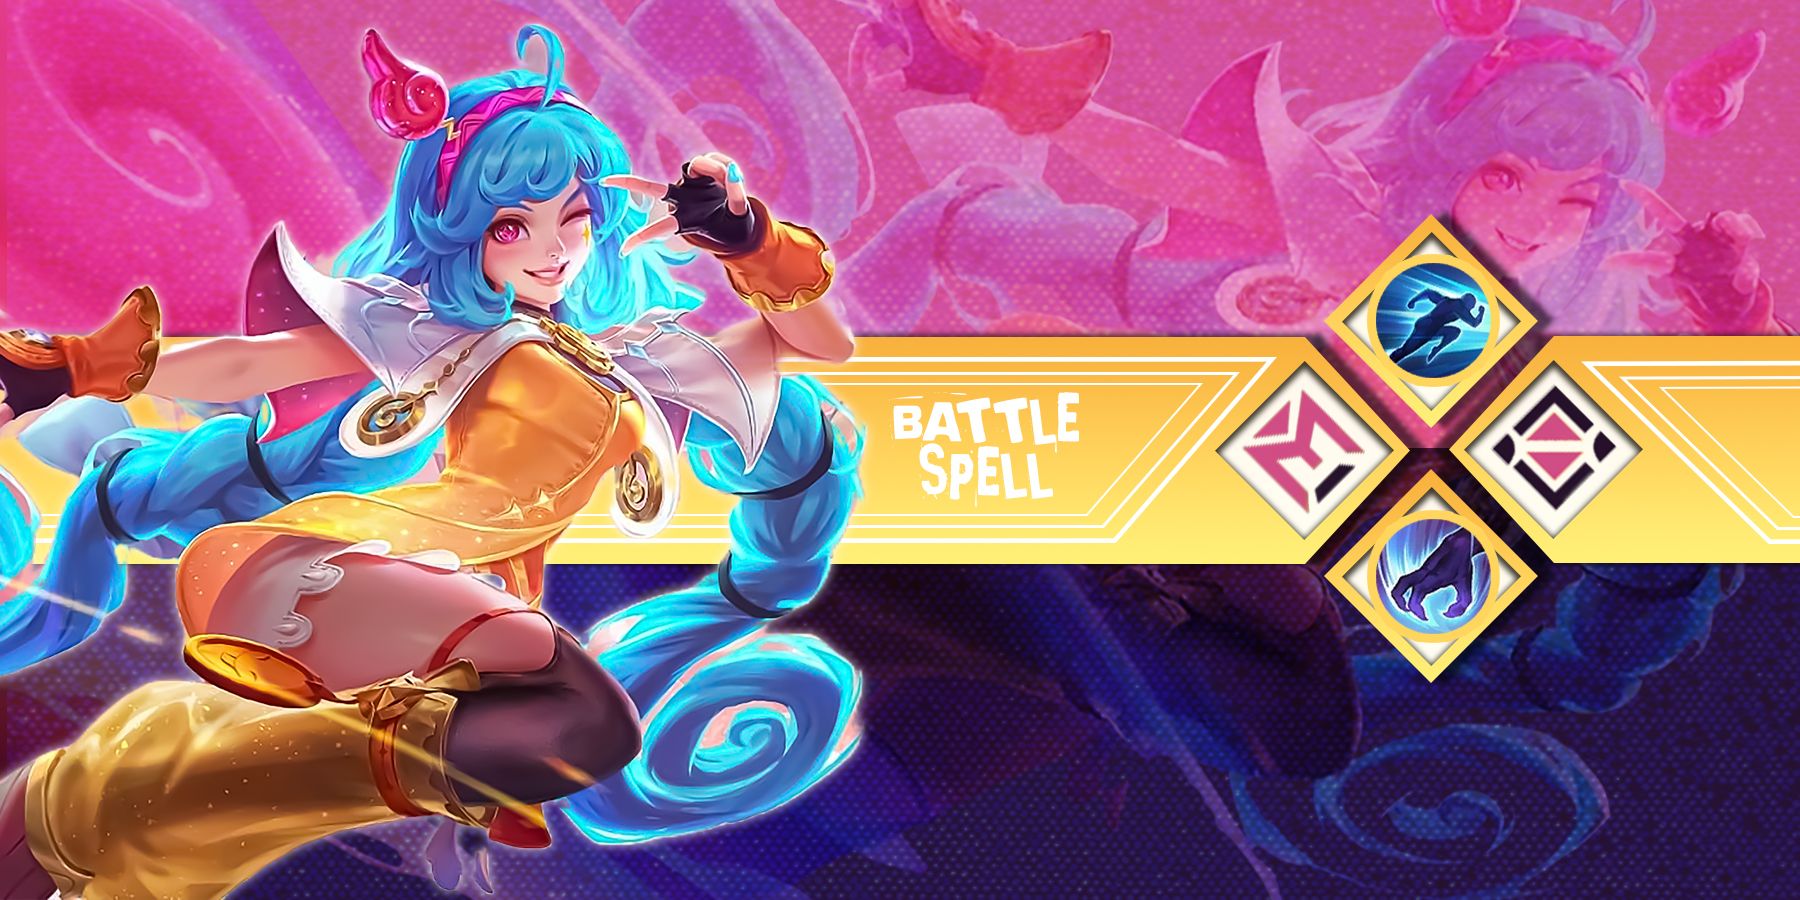 Shishi's best battle spell in Mobile Legends Bang Bang